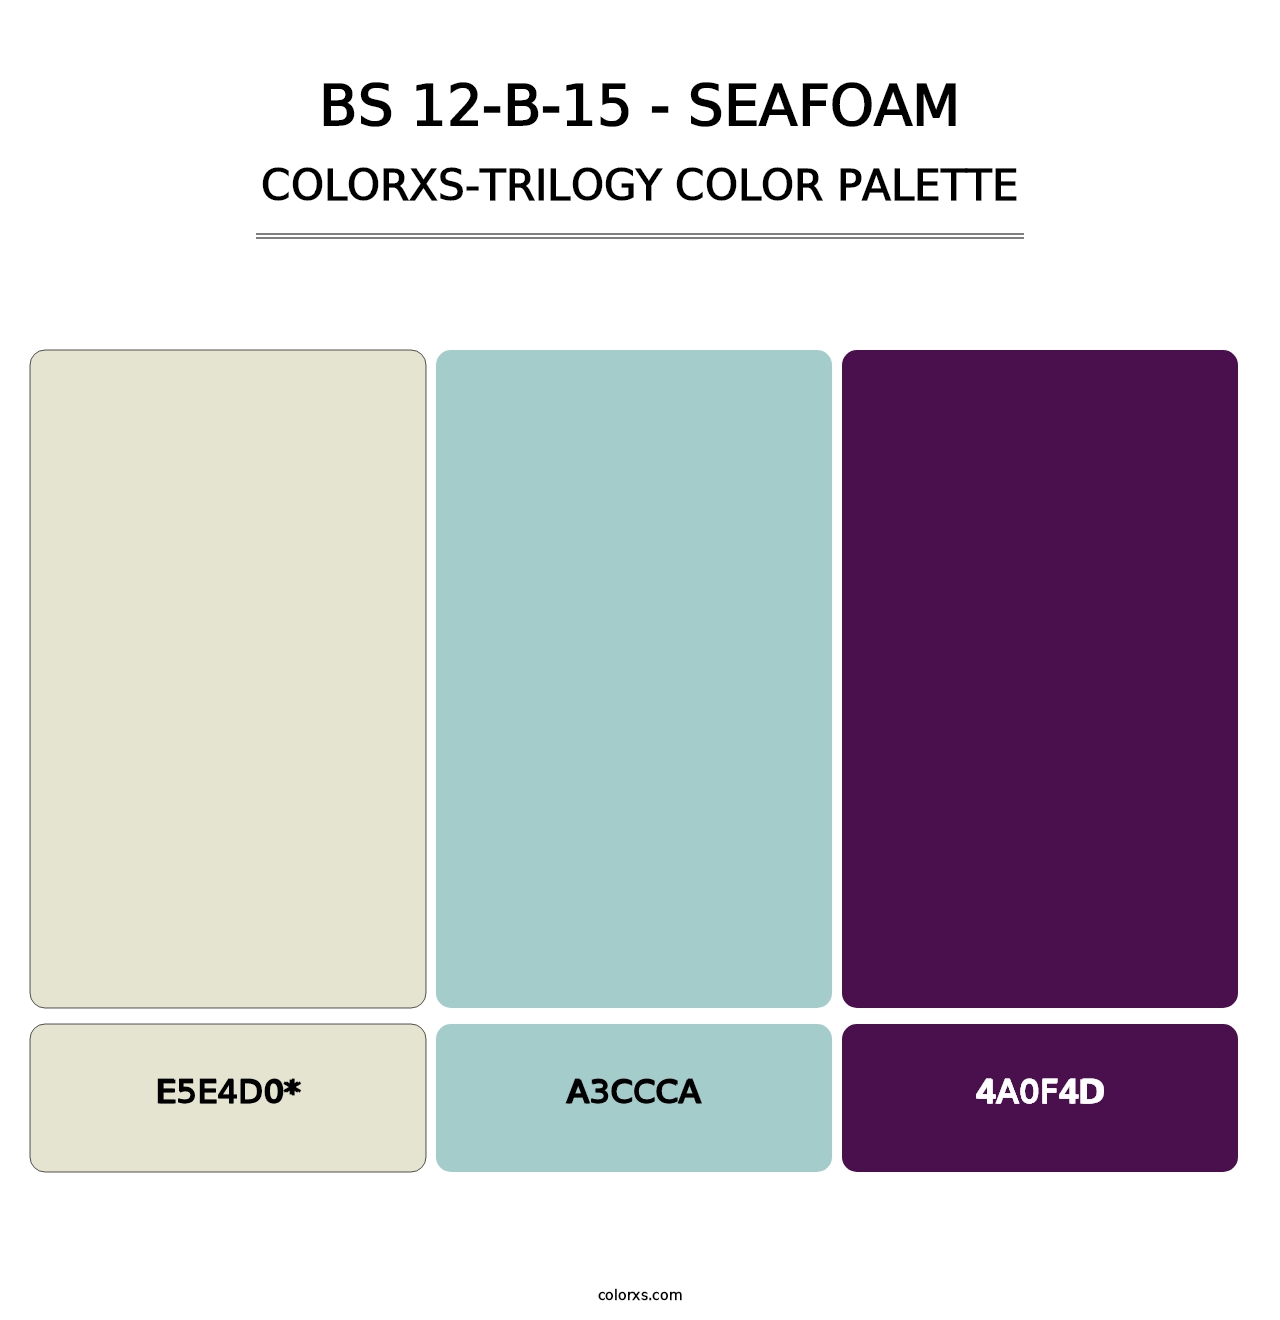 BS 12-B-15 - Seafoam - Colorxs Trilogy Palette